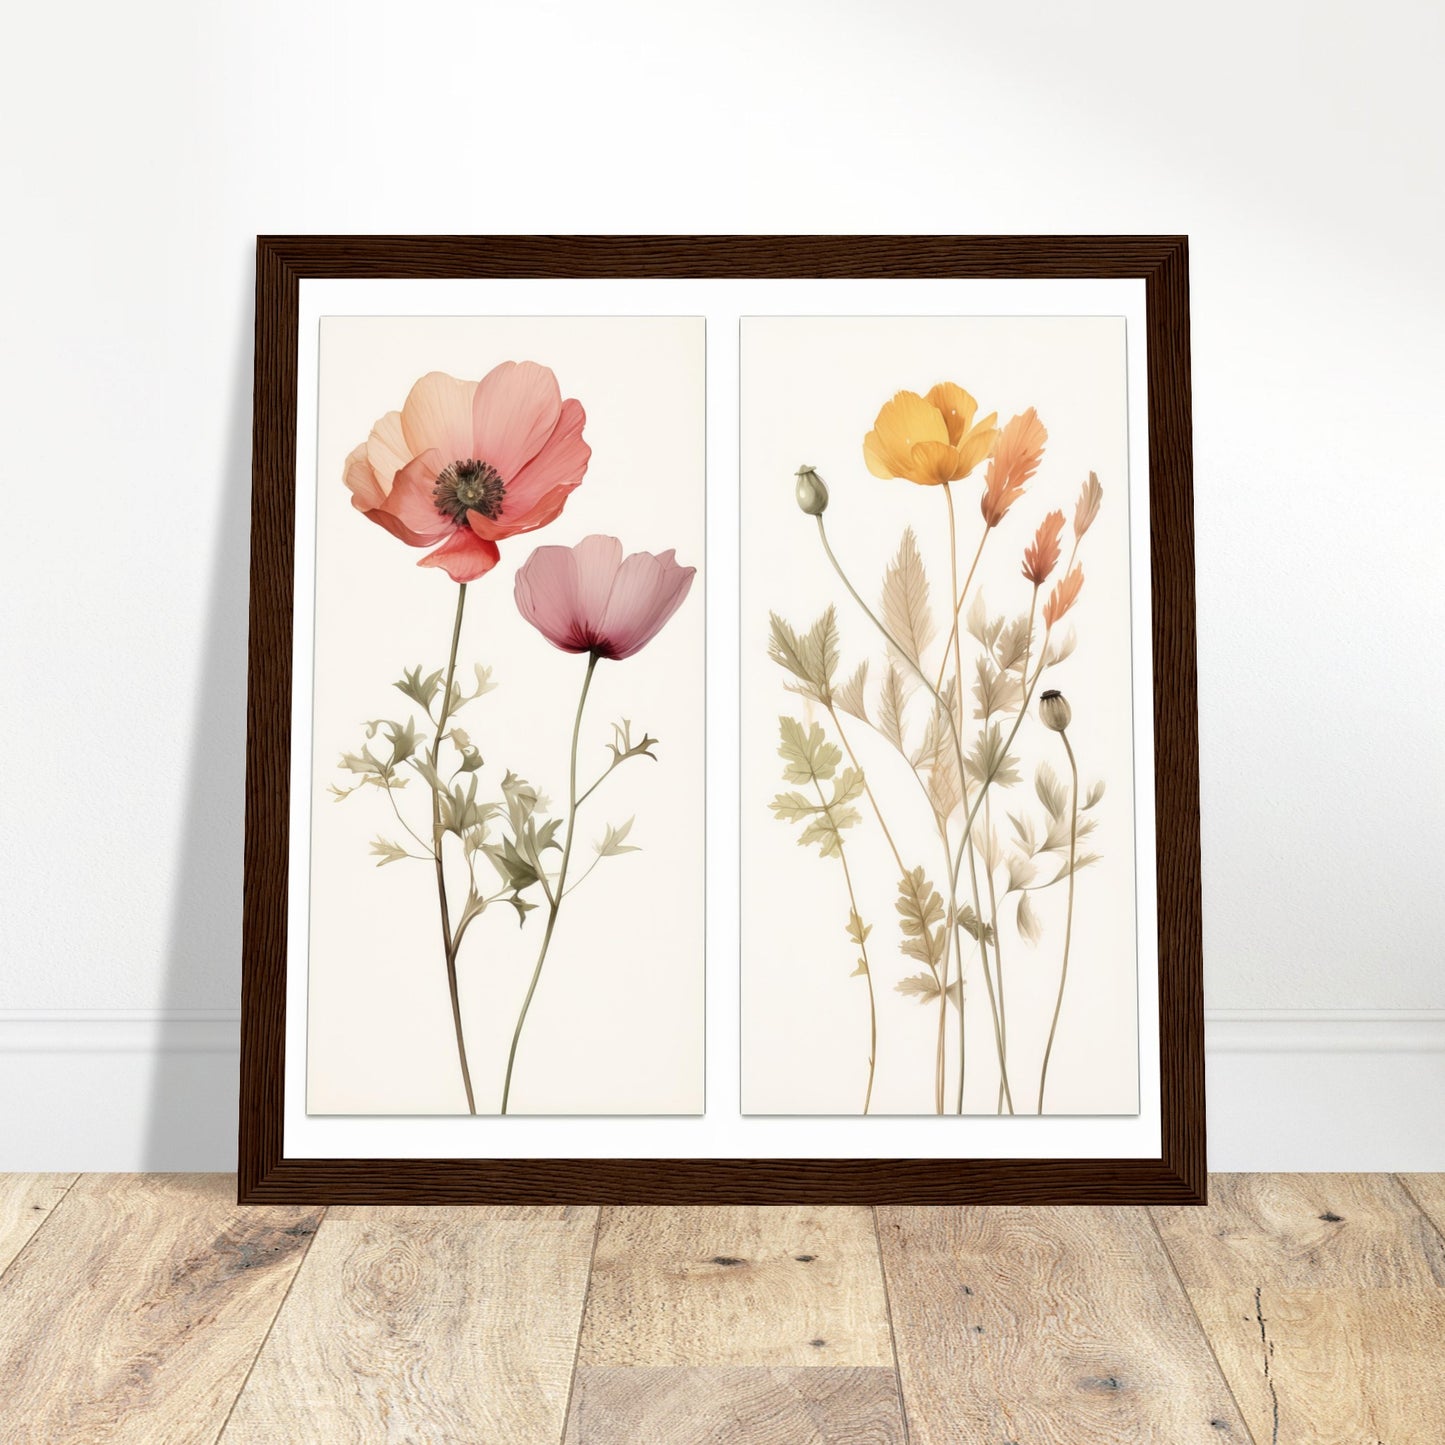 Elegance - Botanical Artwork #2- Print Room Ltd White frame 30x30 cm / 12x12"